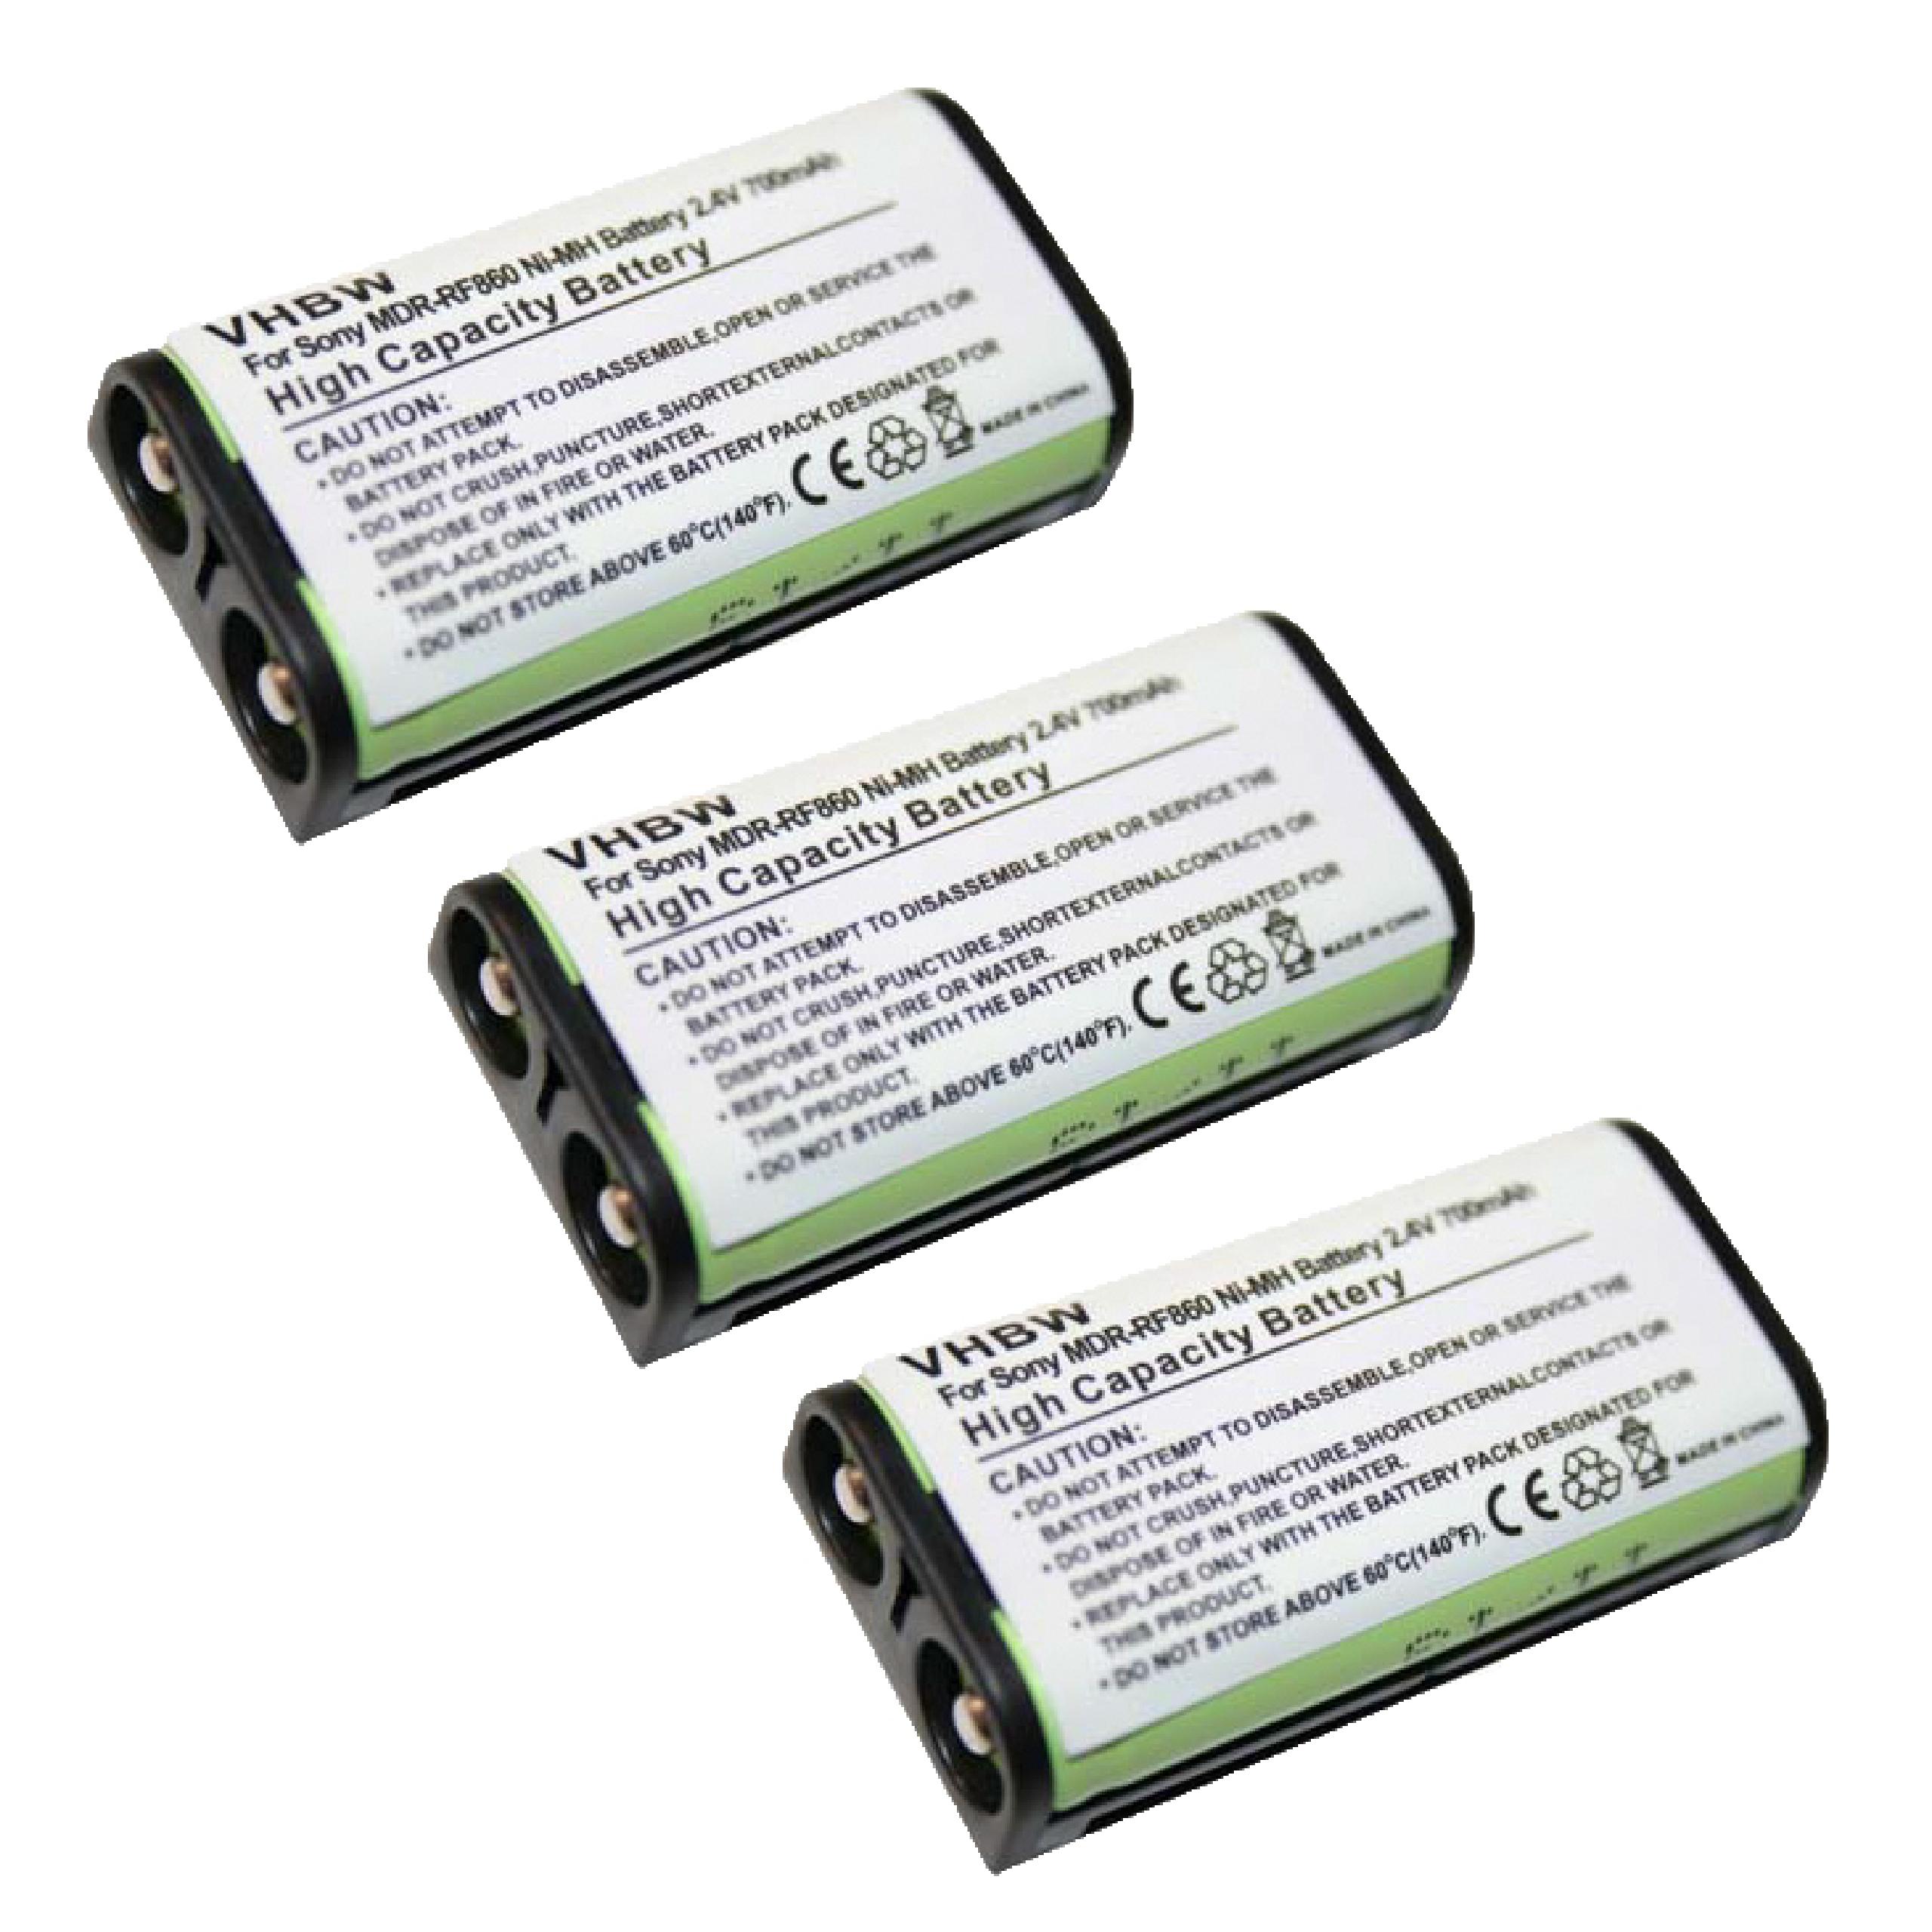 Batteries (3x pièces) remplace Sony BP-HP550-11 pour casque audio - 700mAh 2,4V NiMH